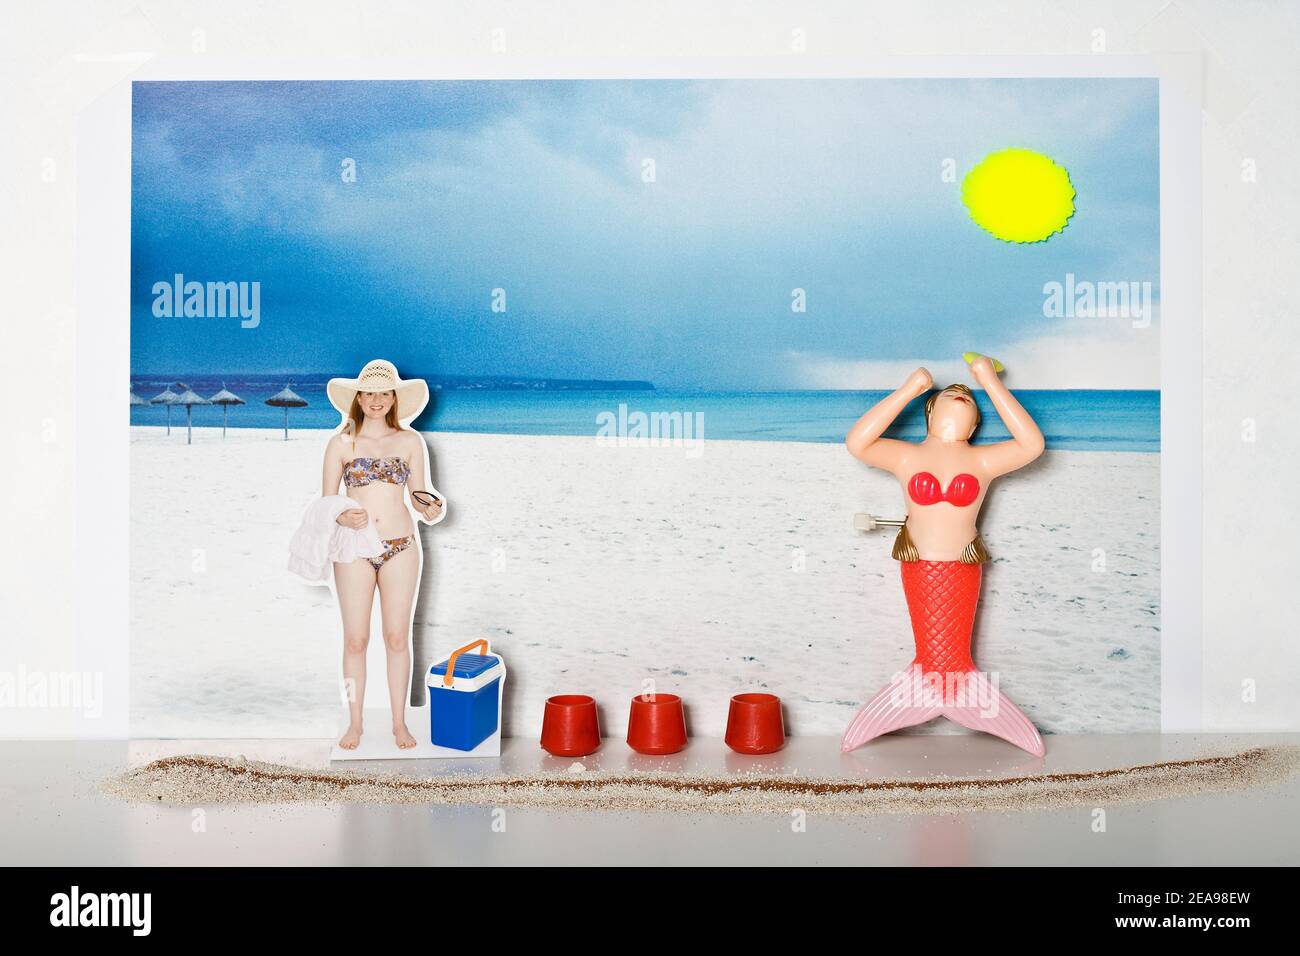 Jeune femme en bikini se tient sur la plage, serviette de bain et lunettes  de soleil à la main, la sirène de bain en plastique adore le soleil,  glacière et contenant rouge